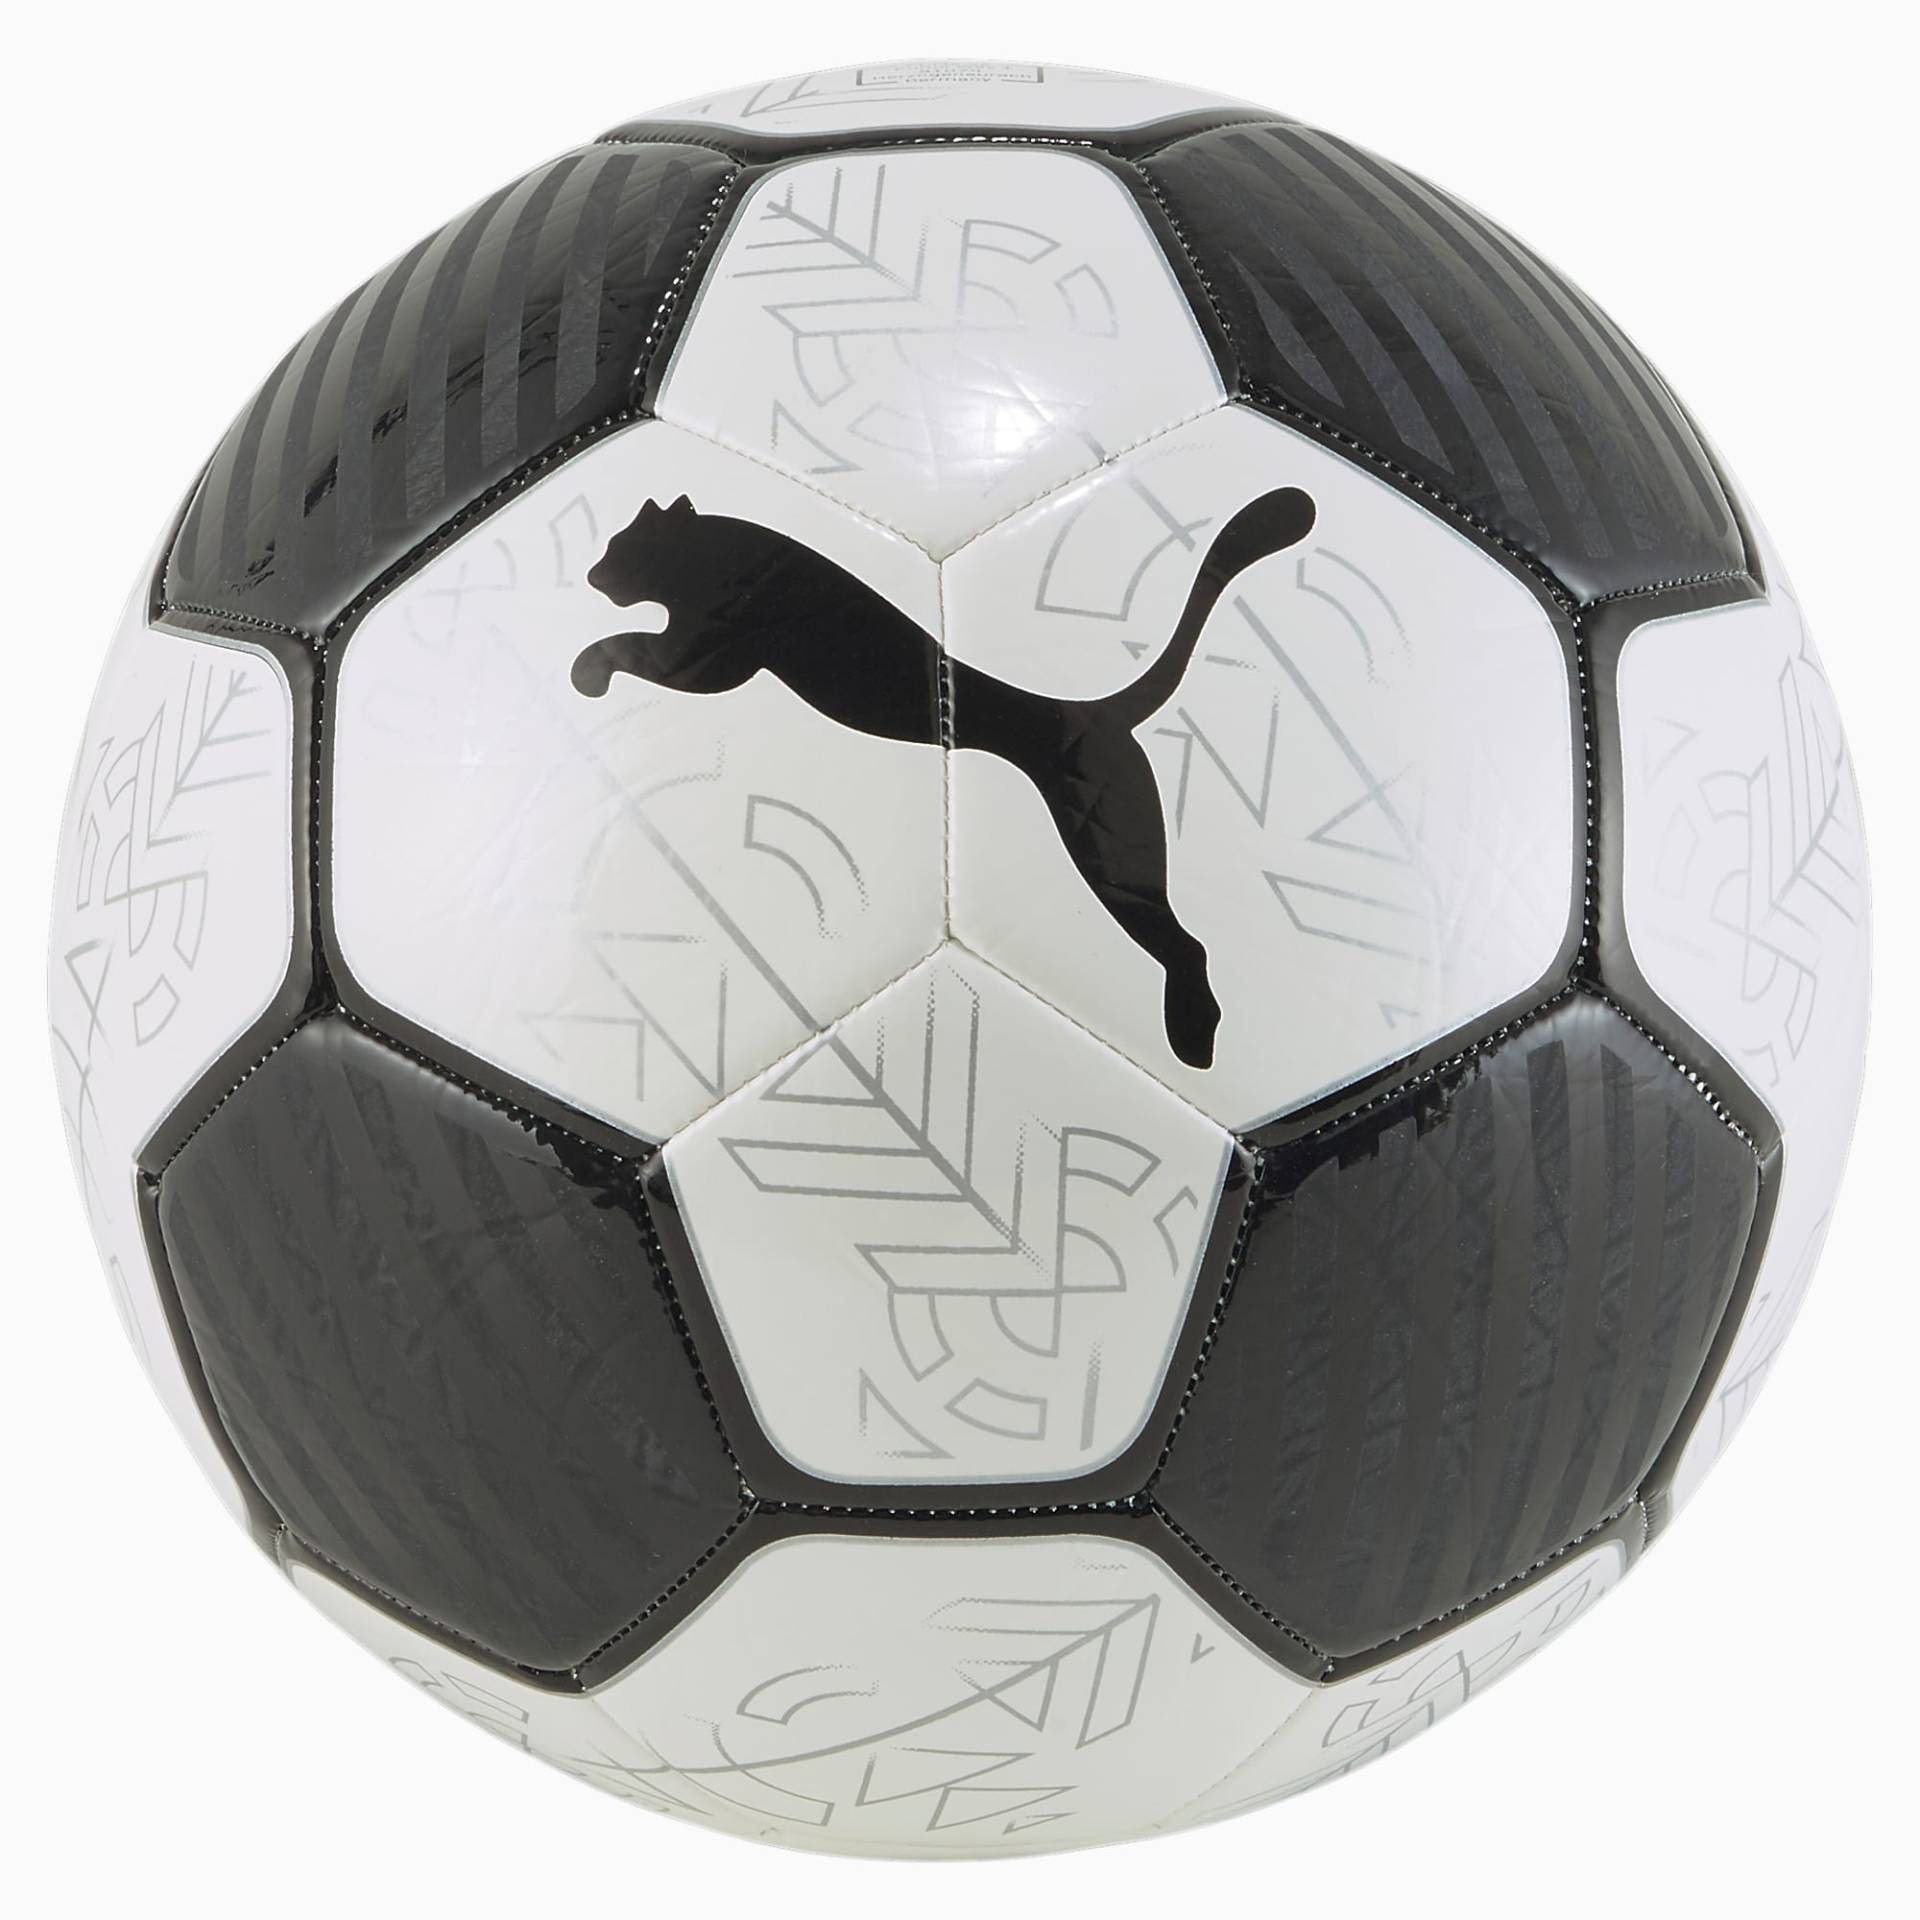 PUMA Prestige Fußball, Weiß/Schwarz, Größe: 5, Accessoires von PUMA